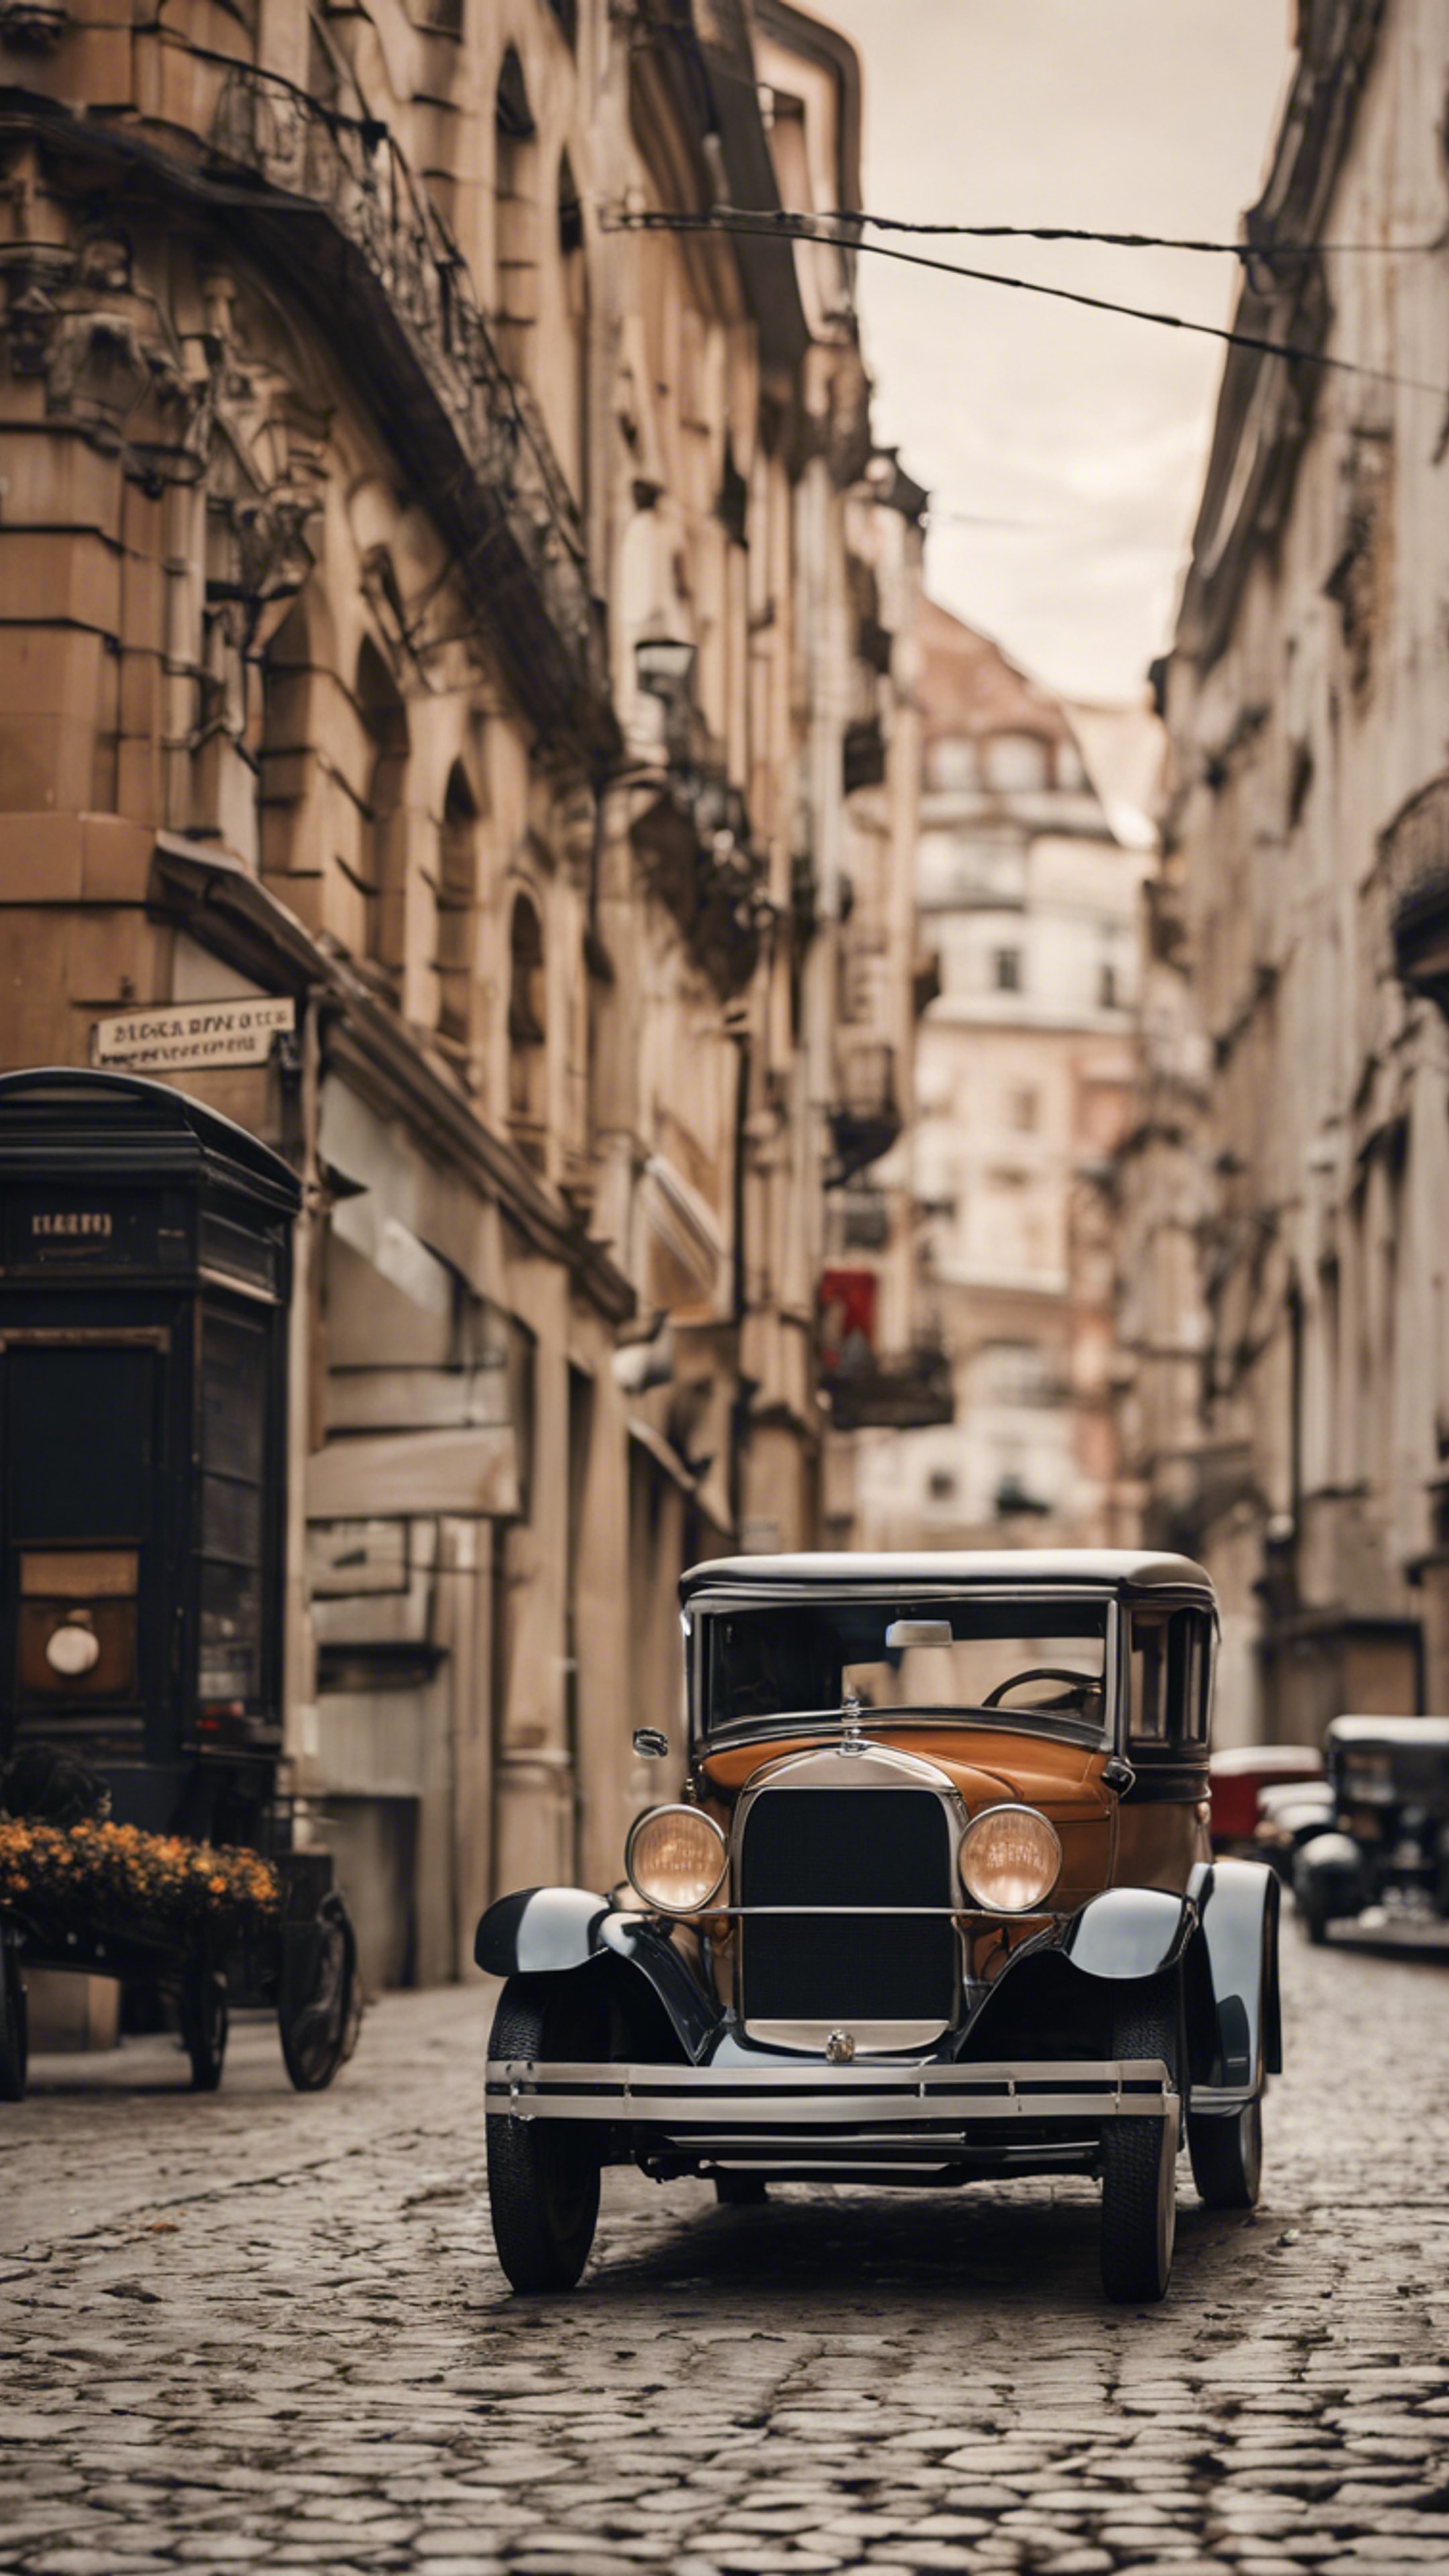 A nostalgic cityscape in the 1920s with classic cars and cobblestone streets. duvar kağıdı[d252acda6f644acf85b4]